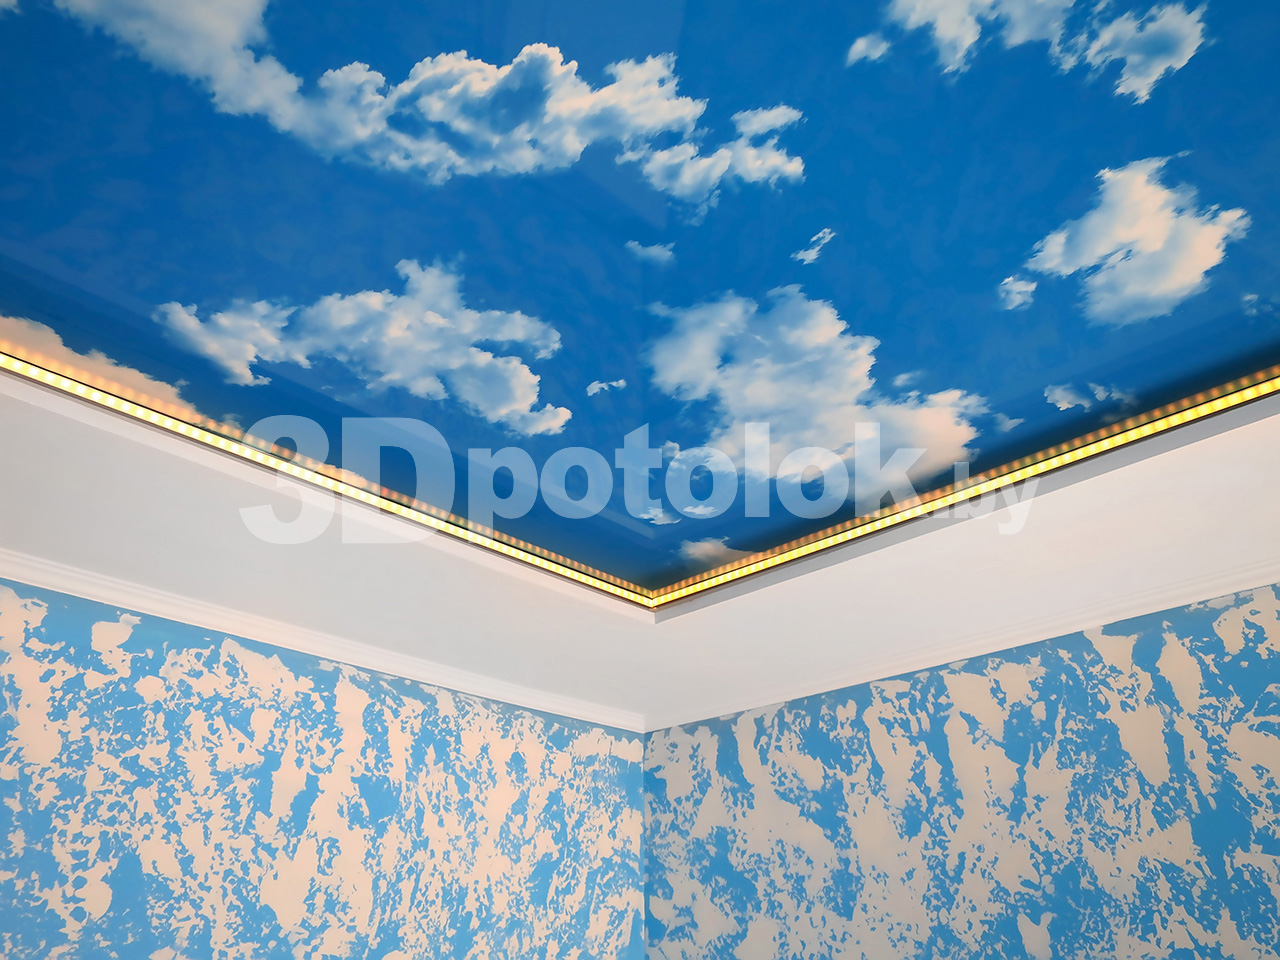 Одноуровневый натяжной потолок облака в ванную 5 м2